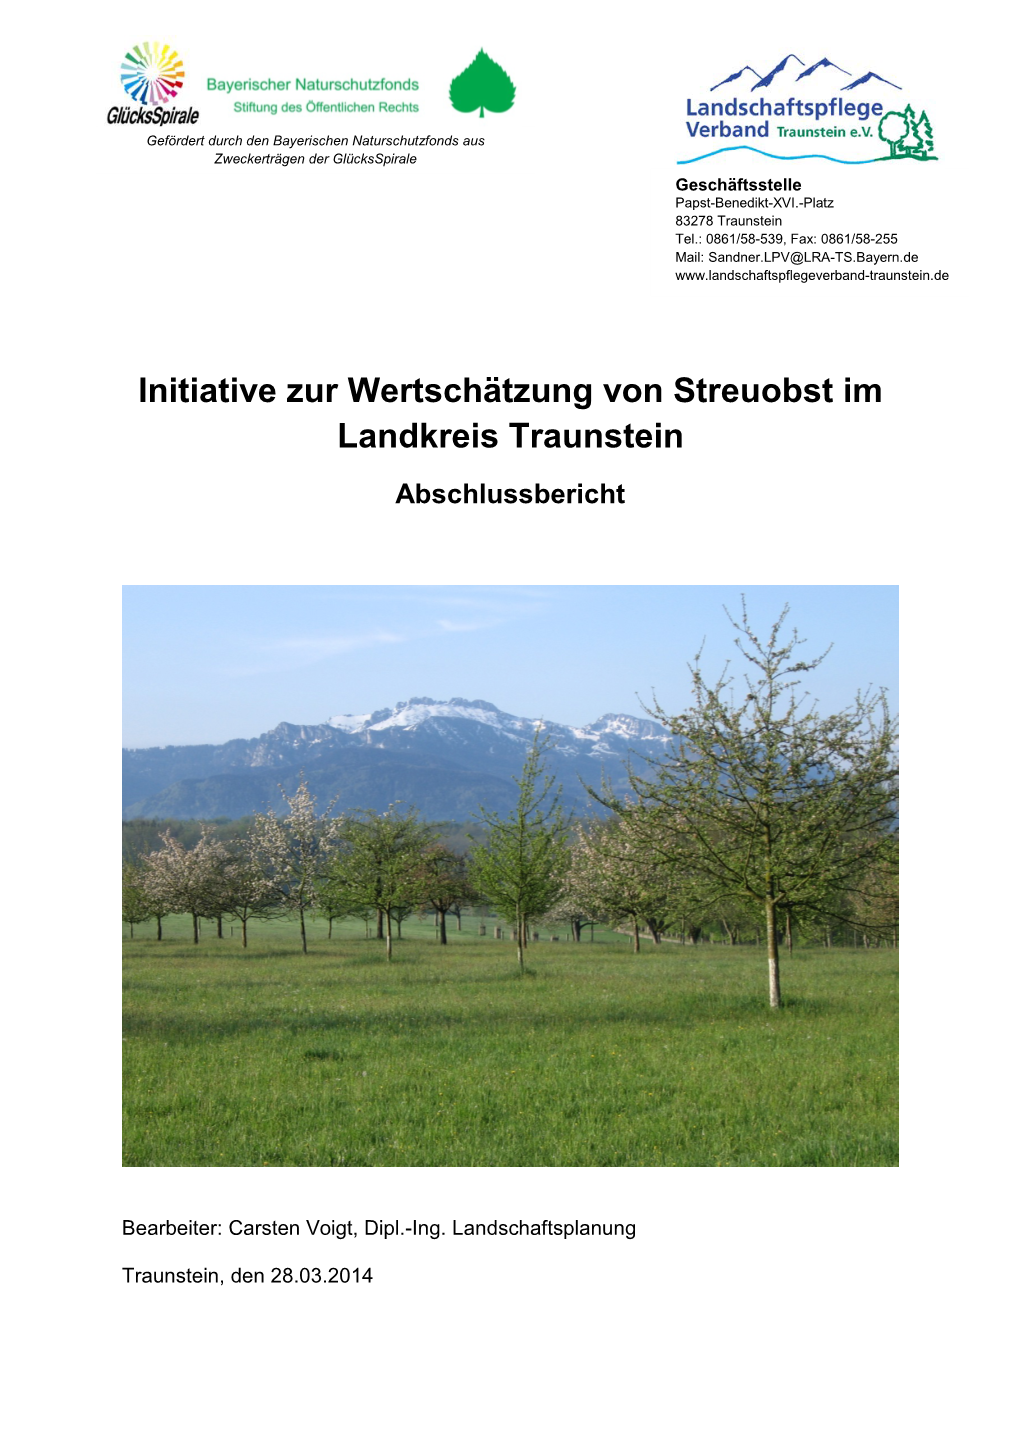 Initiative Zur Wertschätzung Von Streuobst Im Landkreis Traunstein Abschlussbericht